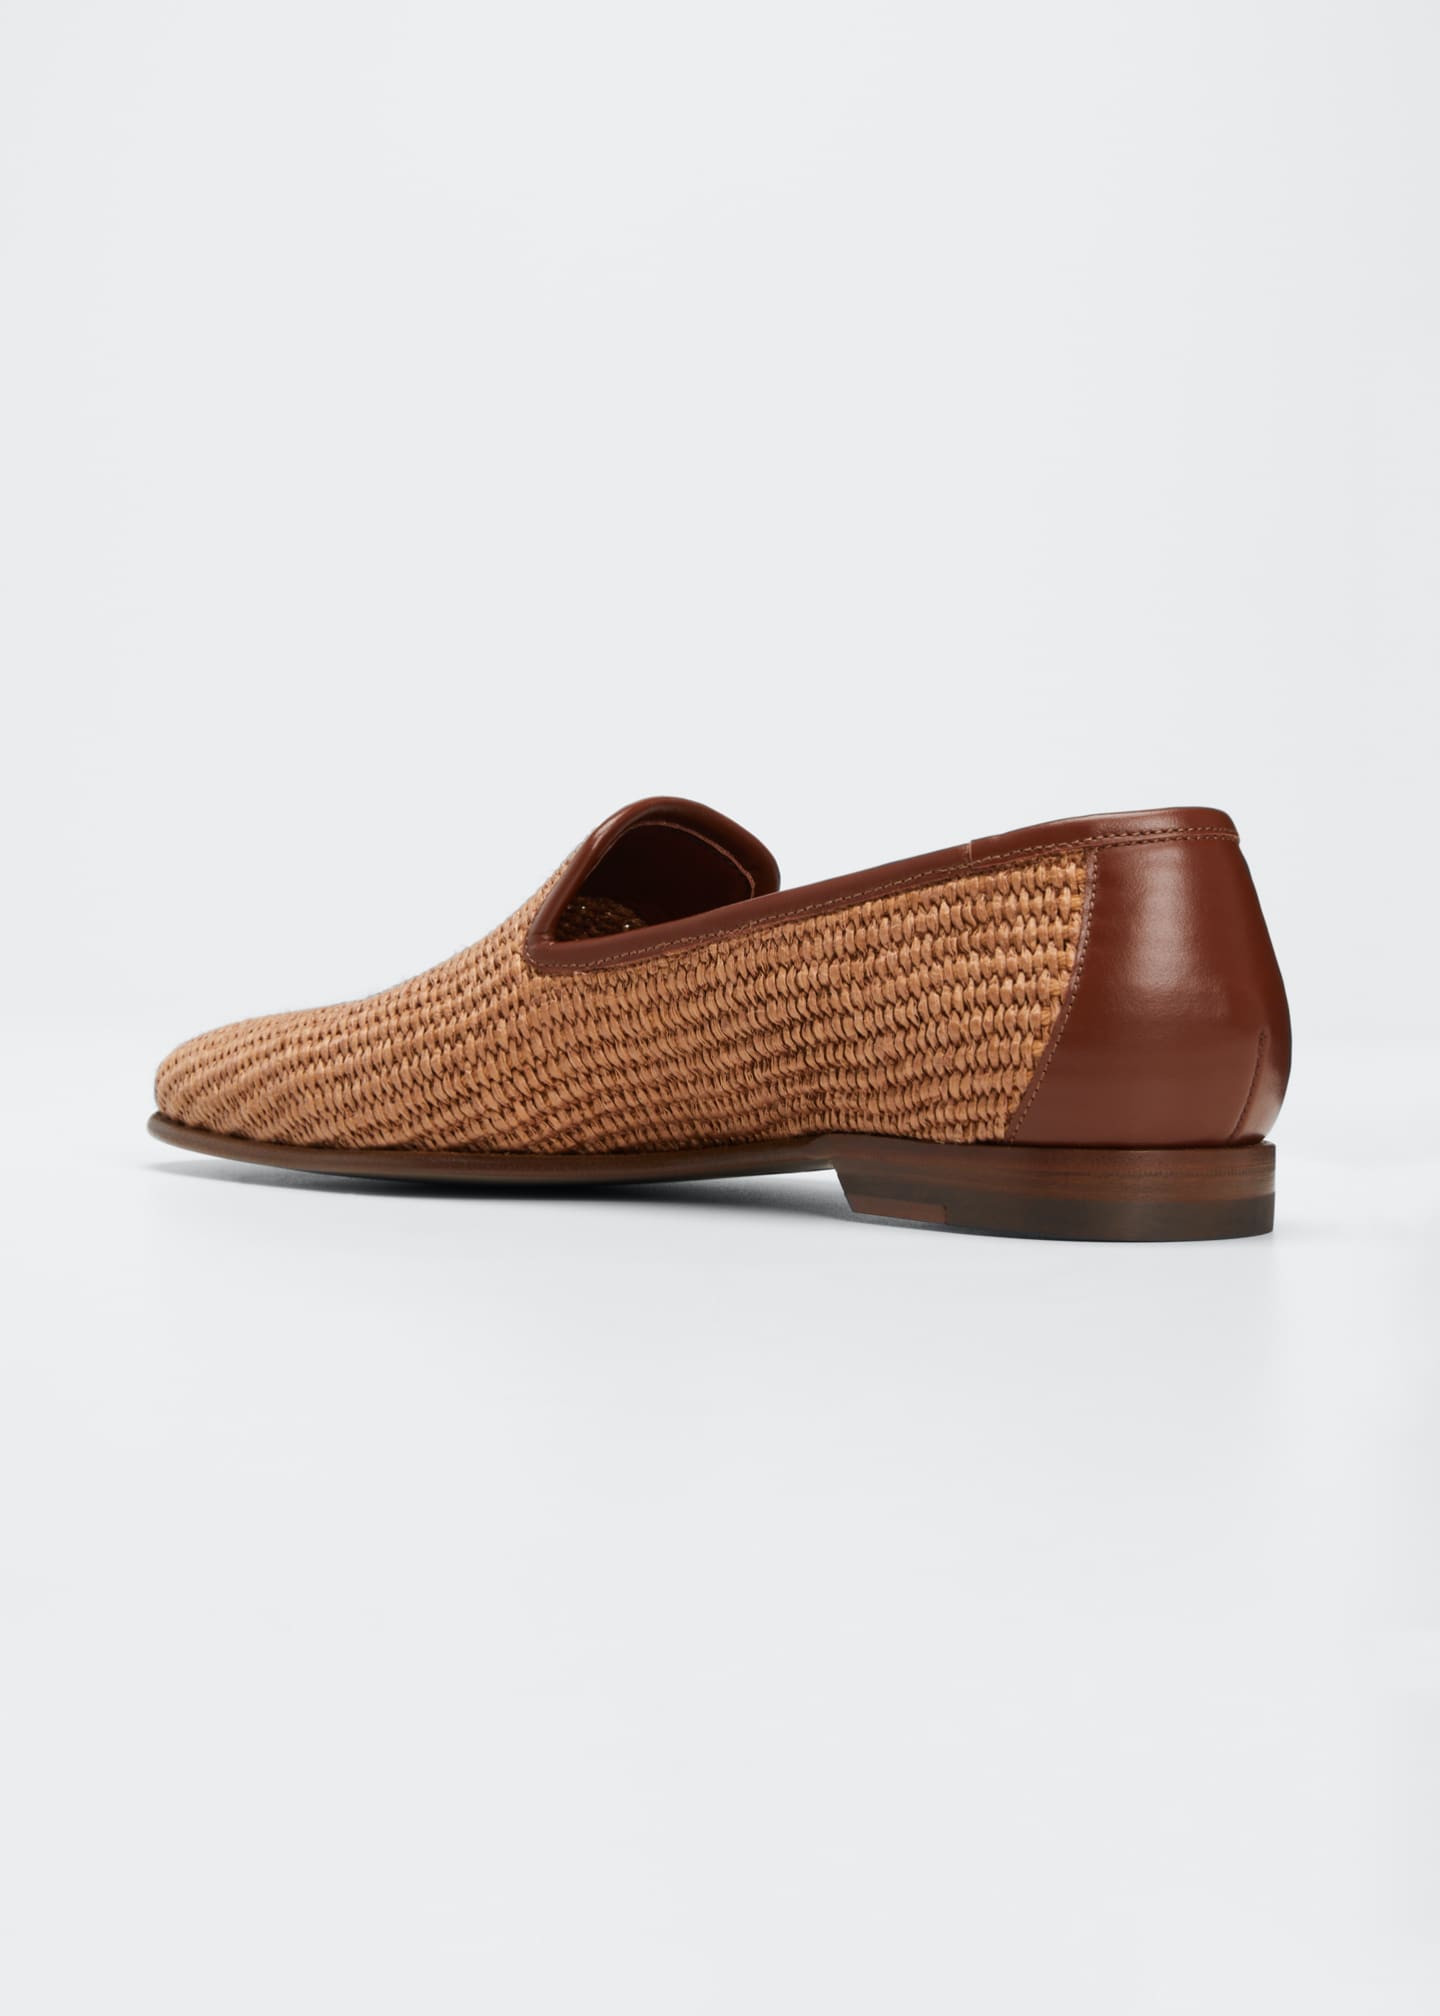 Manolo Blahnik Men's Raffia Woven Leather Loafers - Bergdorf Goodman